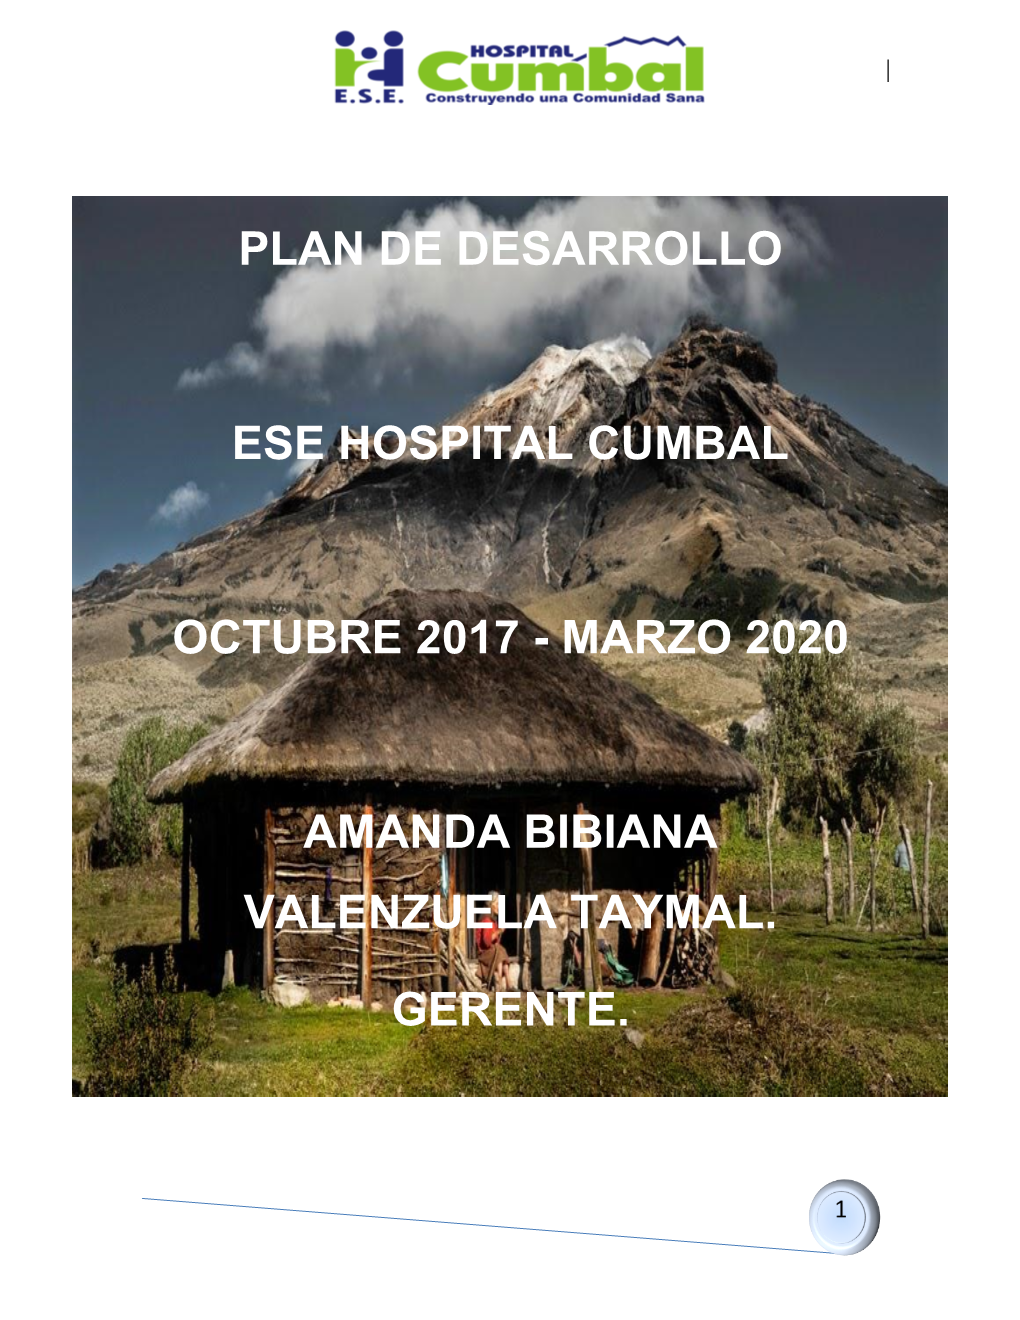 Plan De Desarrollo E.S.E. Hospital Cumbal